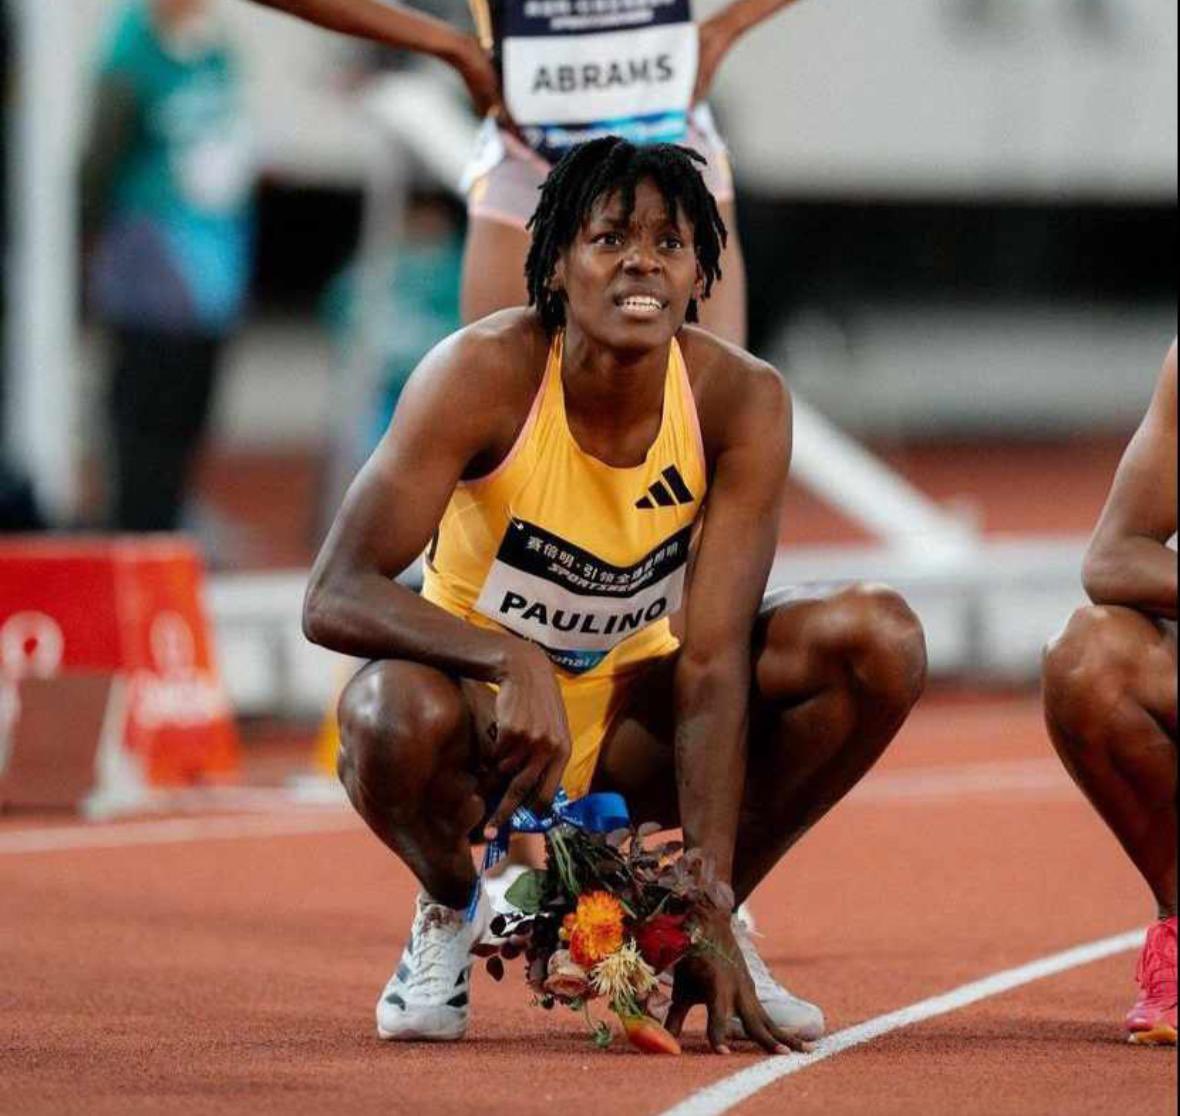 💥¡#DeRDpalMundo! 👏 Nuestra atleta creso @Marileidy_P gana la segunda parada de la #DLSuzhoudl al conquistar los 400 metros con tiempo de 50.89s. ¡Nuestra campeón se sigue adueñando de las competencias! #SomosCreso #VamosRD #CreandoSueñosOlimpicos